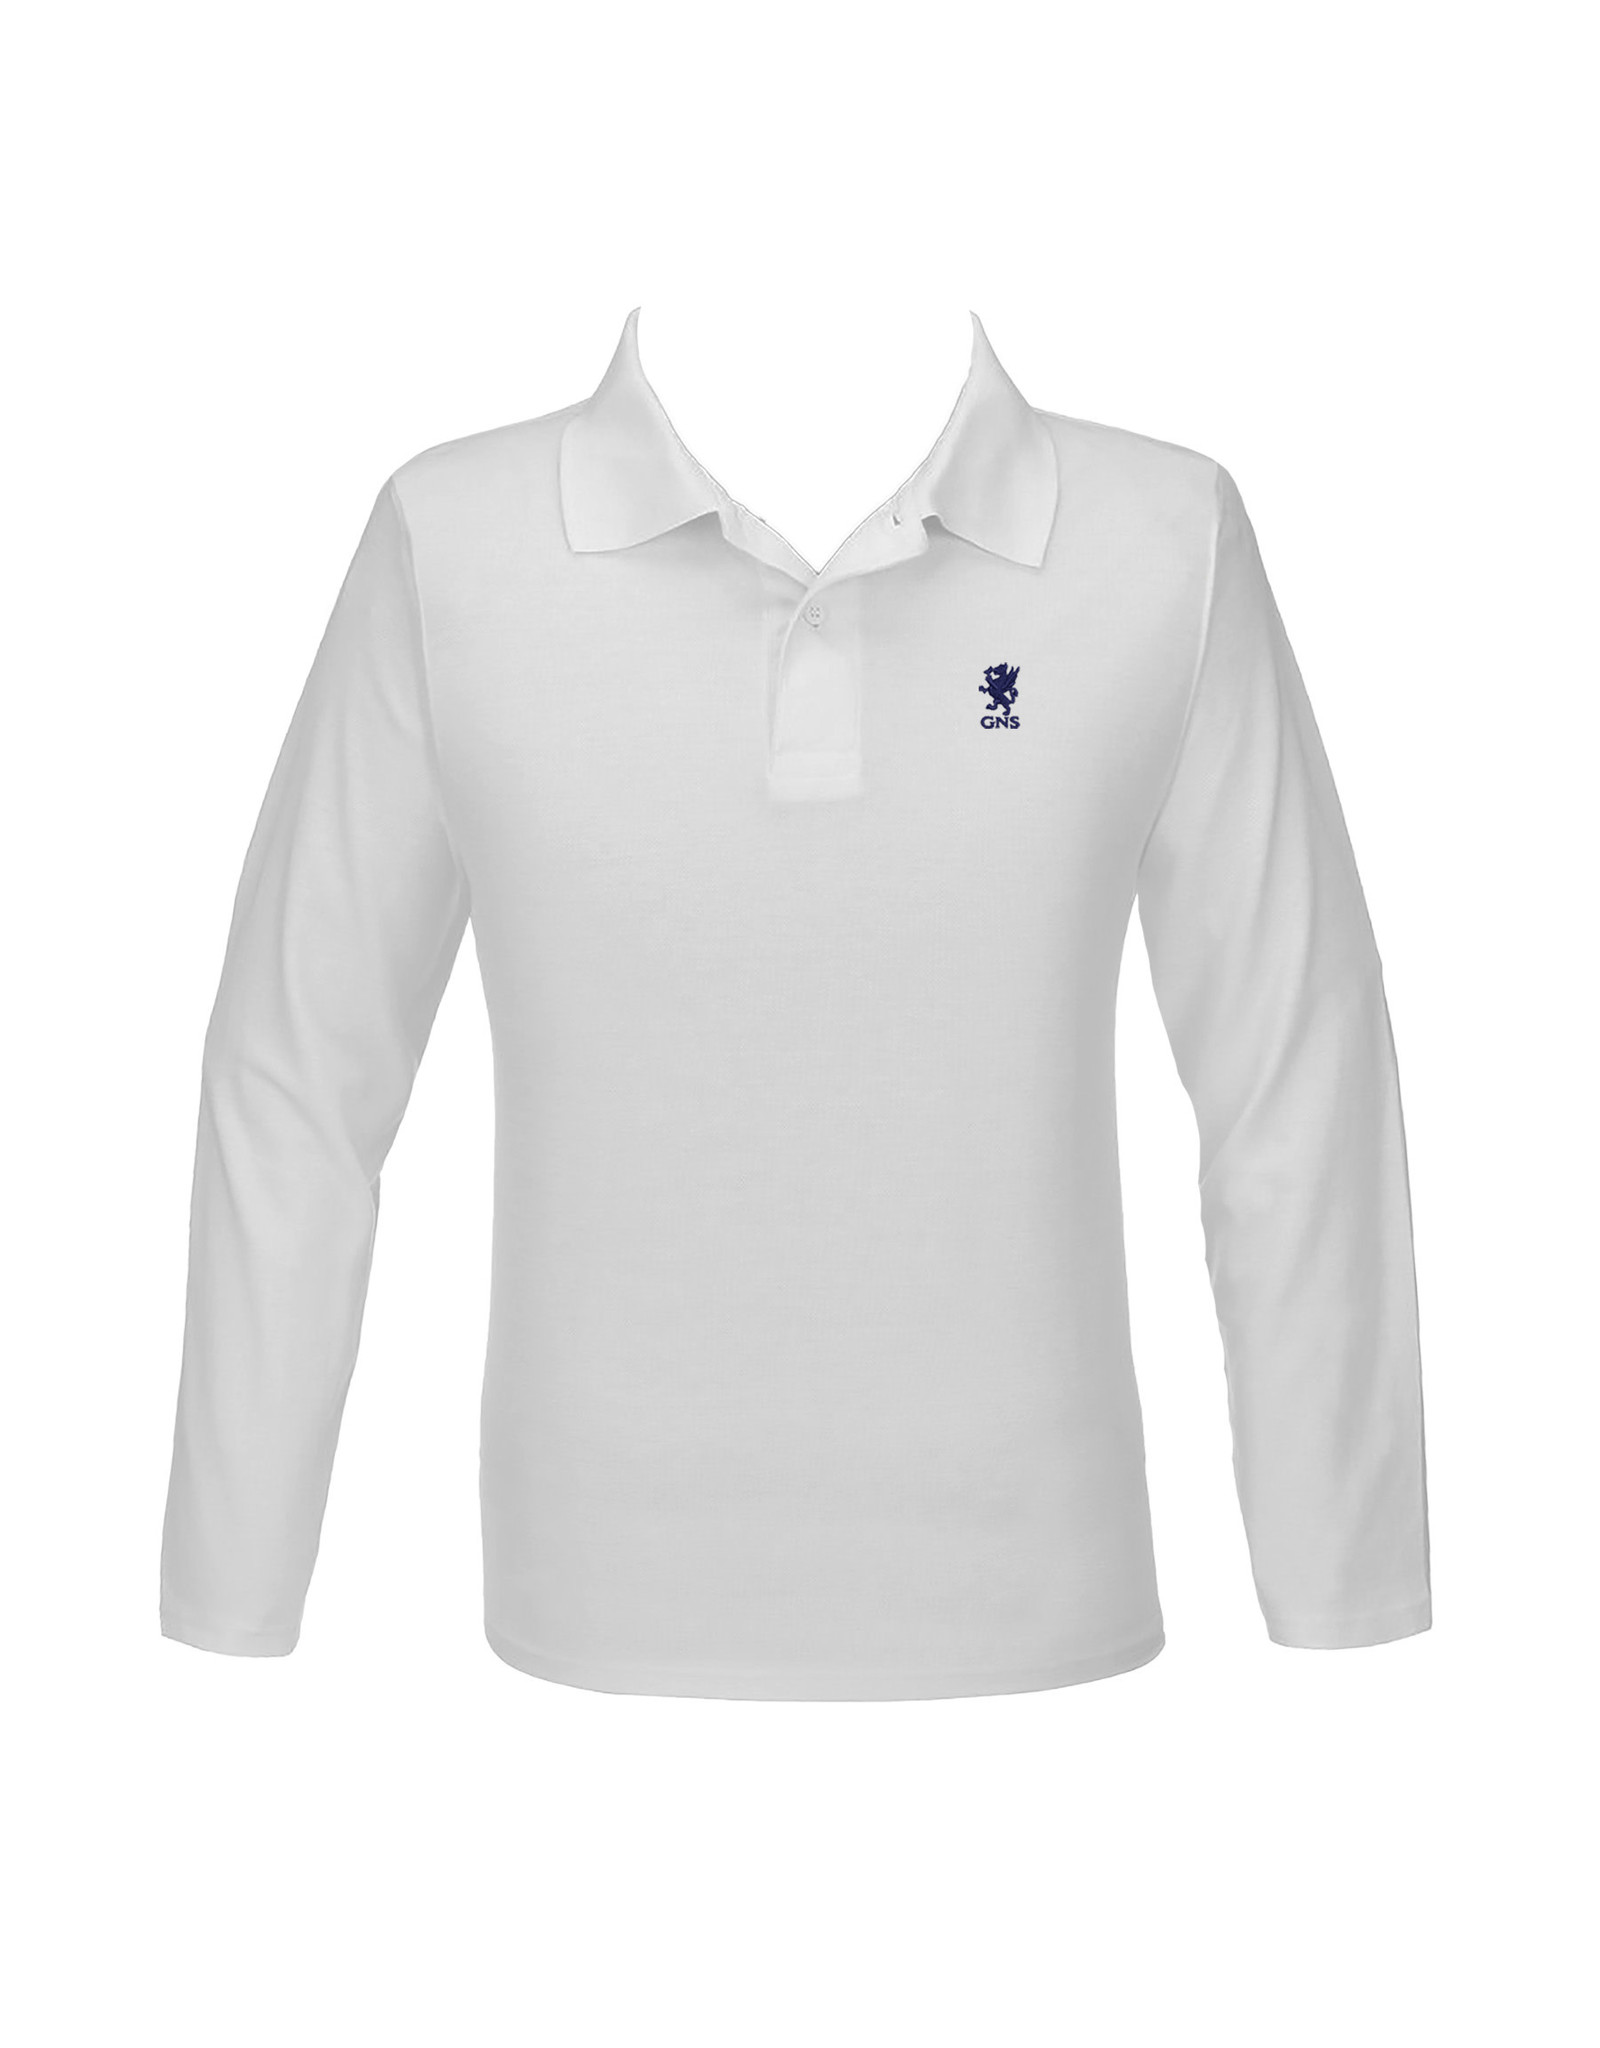 Cambridge Golf Shirt, Long Sleeve - White - Youth/Unisex